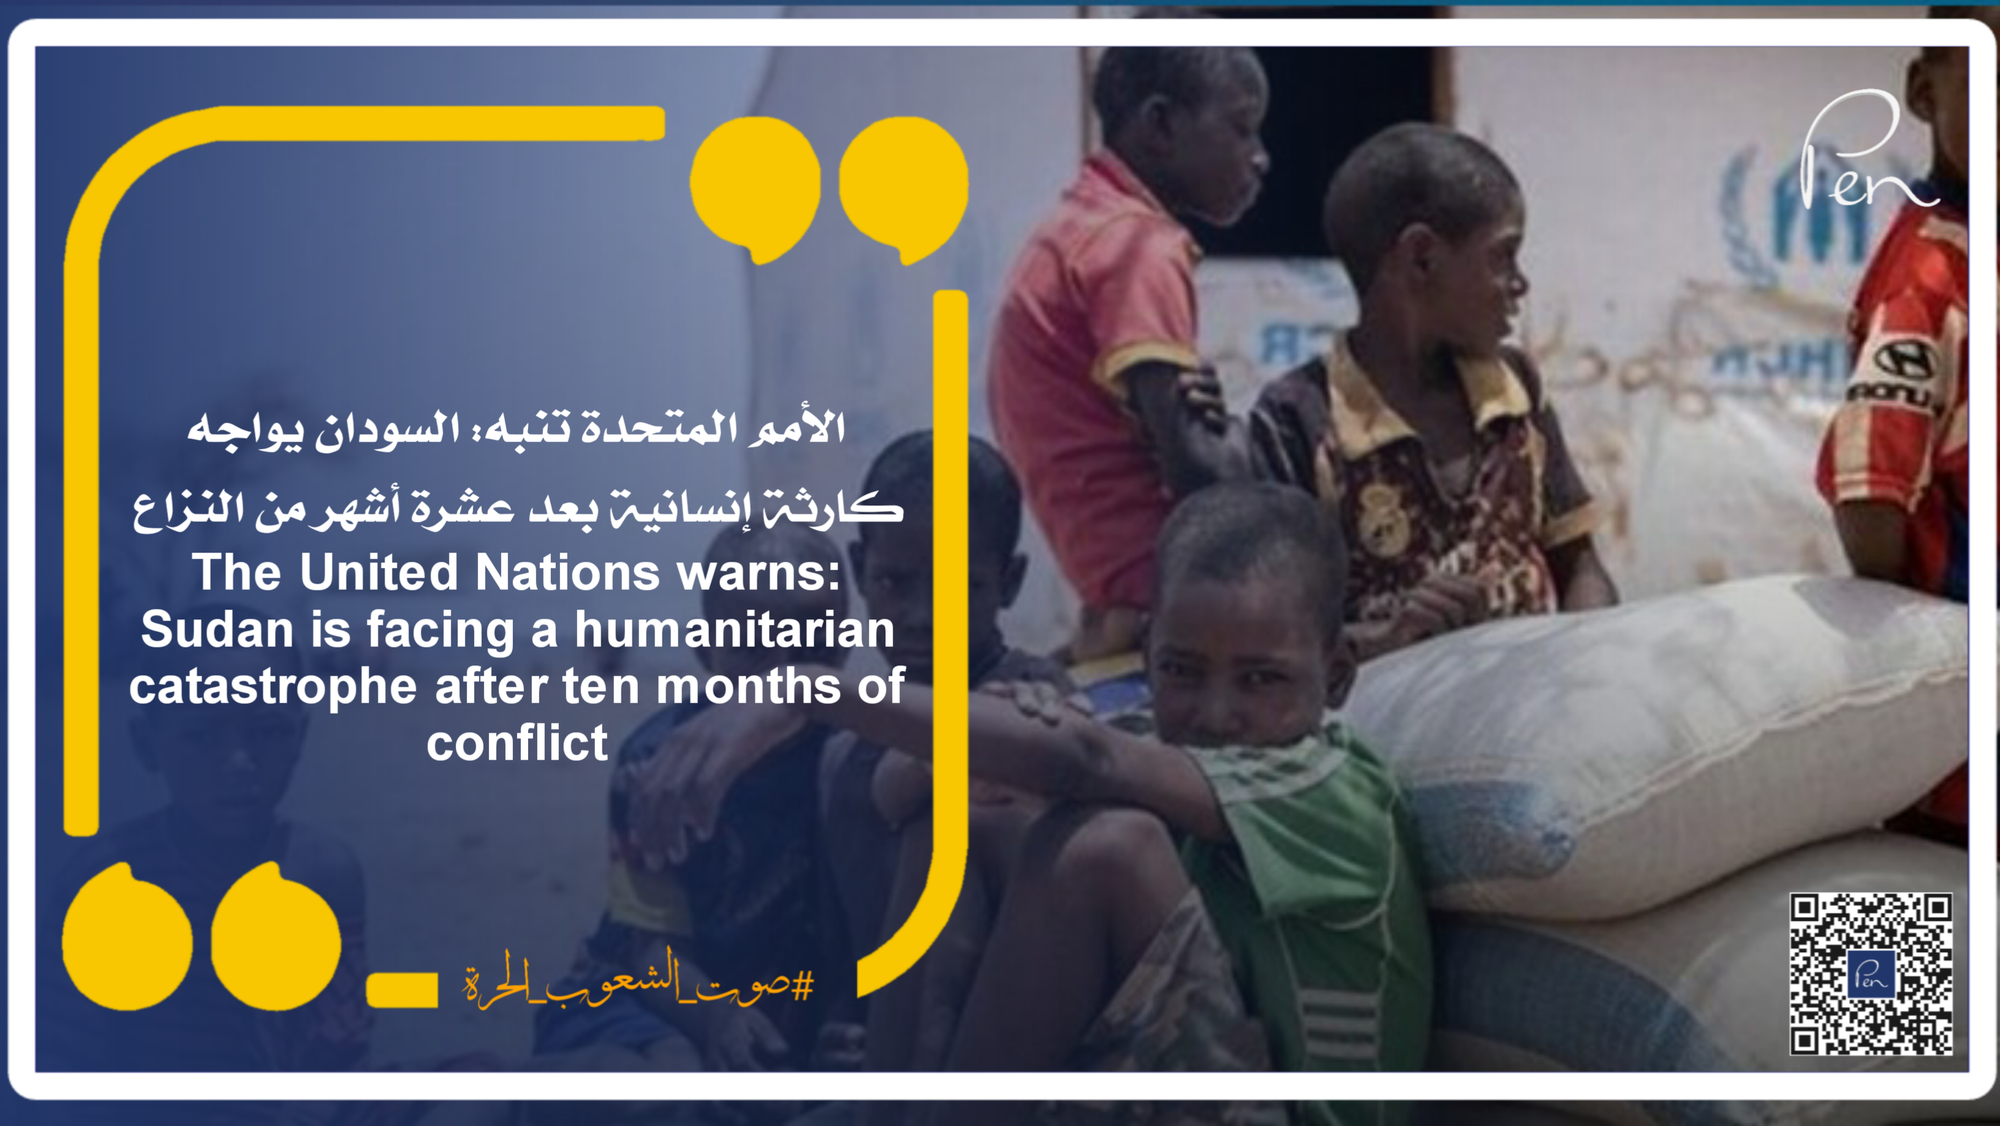 الأمم المتحدة تنبه: السودان يواجه كارثة إنسانية بعد عشرة أشهر من النزاع